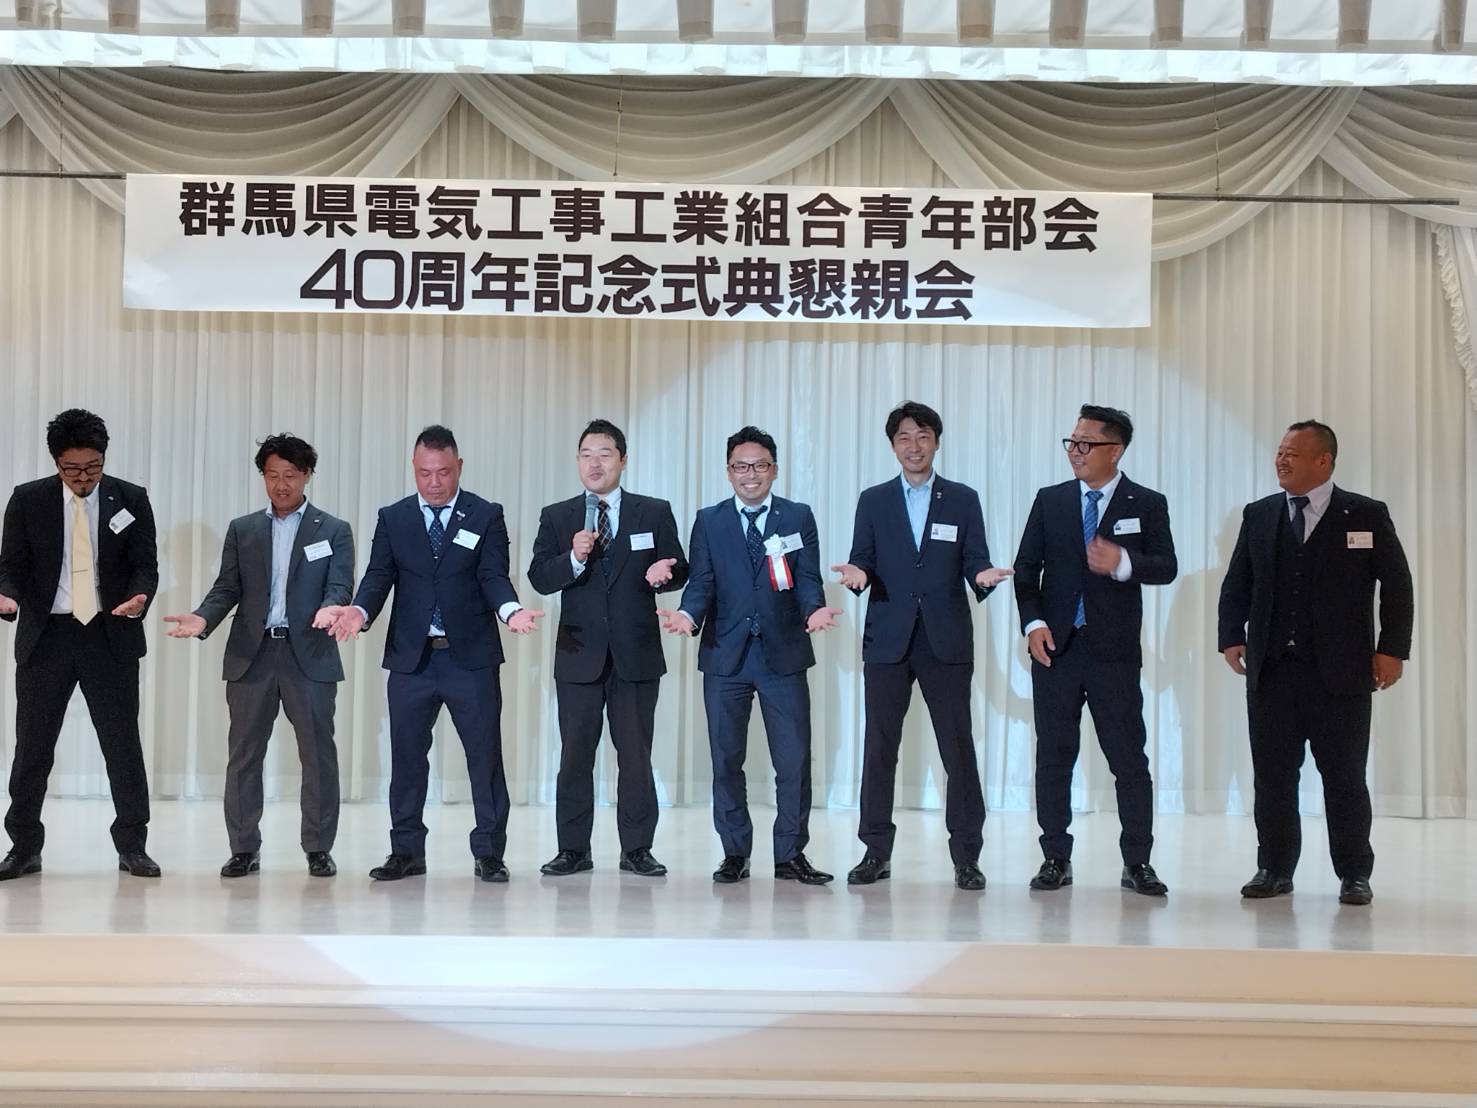 群馬県電気工事工業組合青年部会の40周年記念式典に参加のイメージ